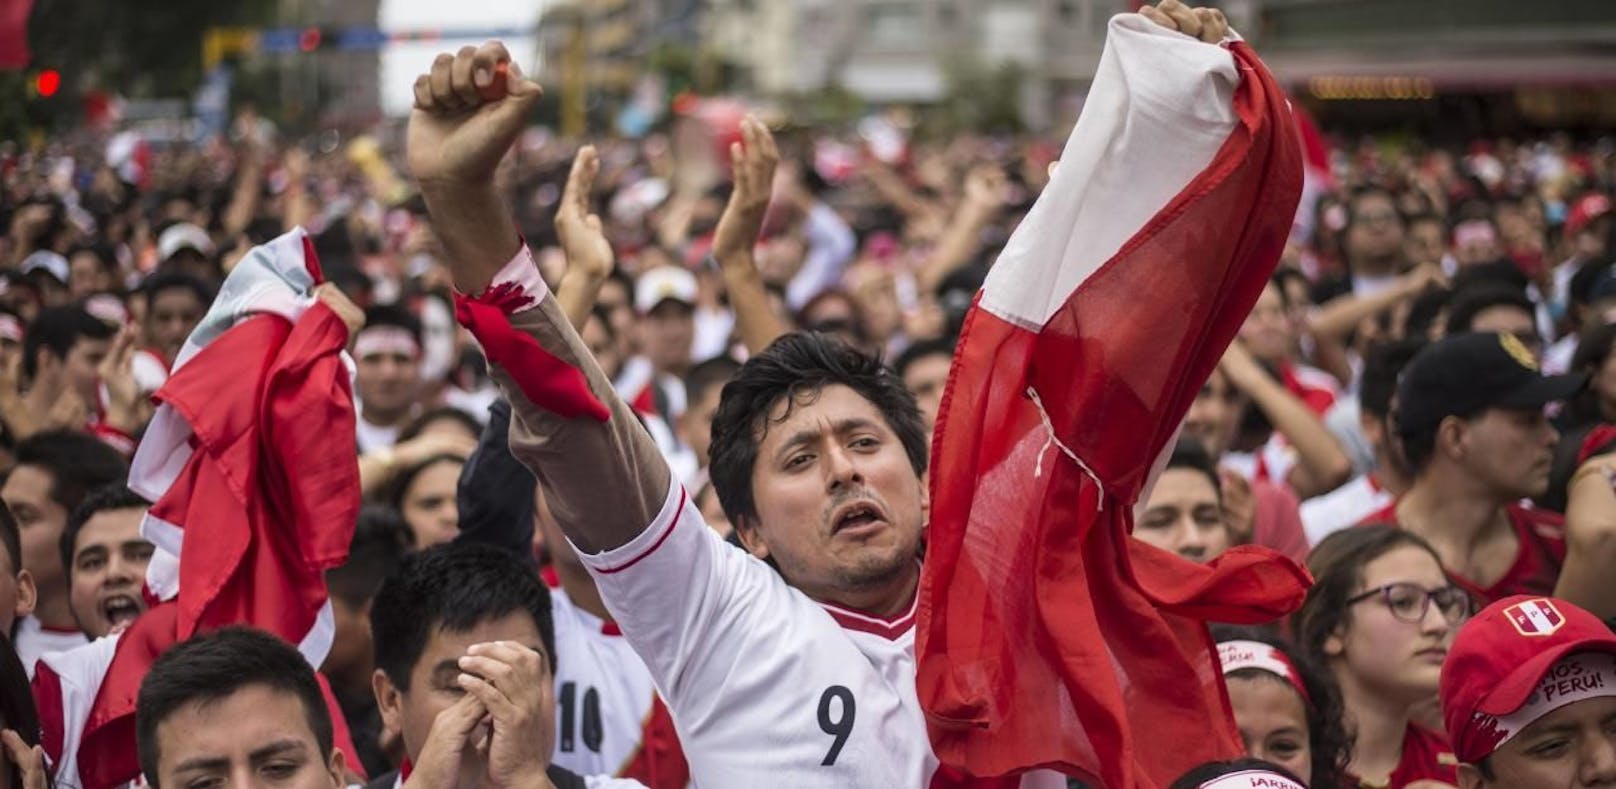 WM-Elfer löste Erdbeben-Alarm in Peru aus